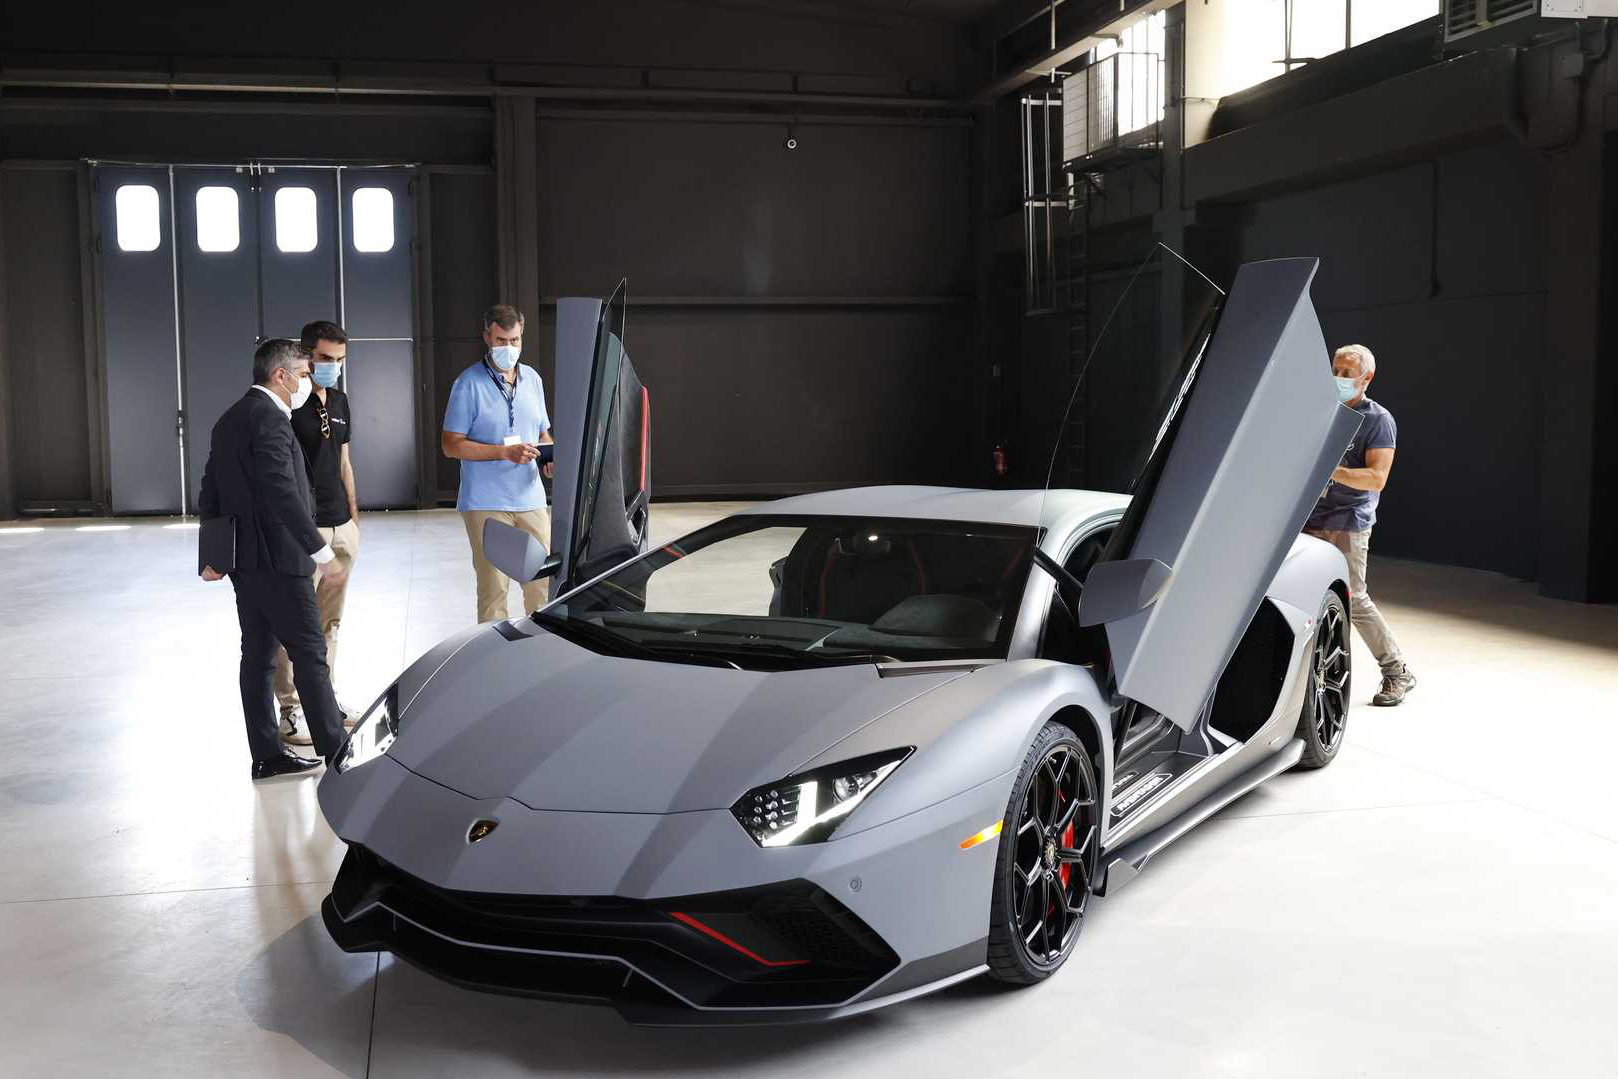 Hé lộ thông tin hậu duệ, Lamborghini Aventador Ultimae bỗng trở thành hàng hot với số lượng giới hạn 600 chiếc